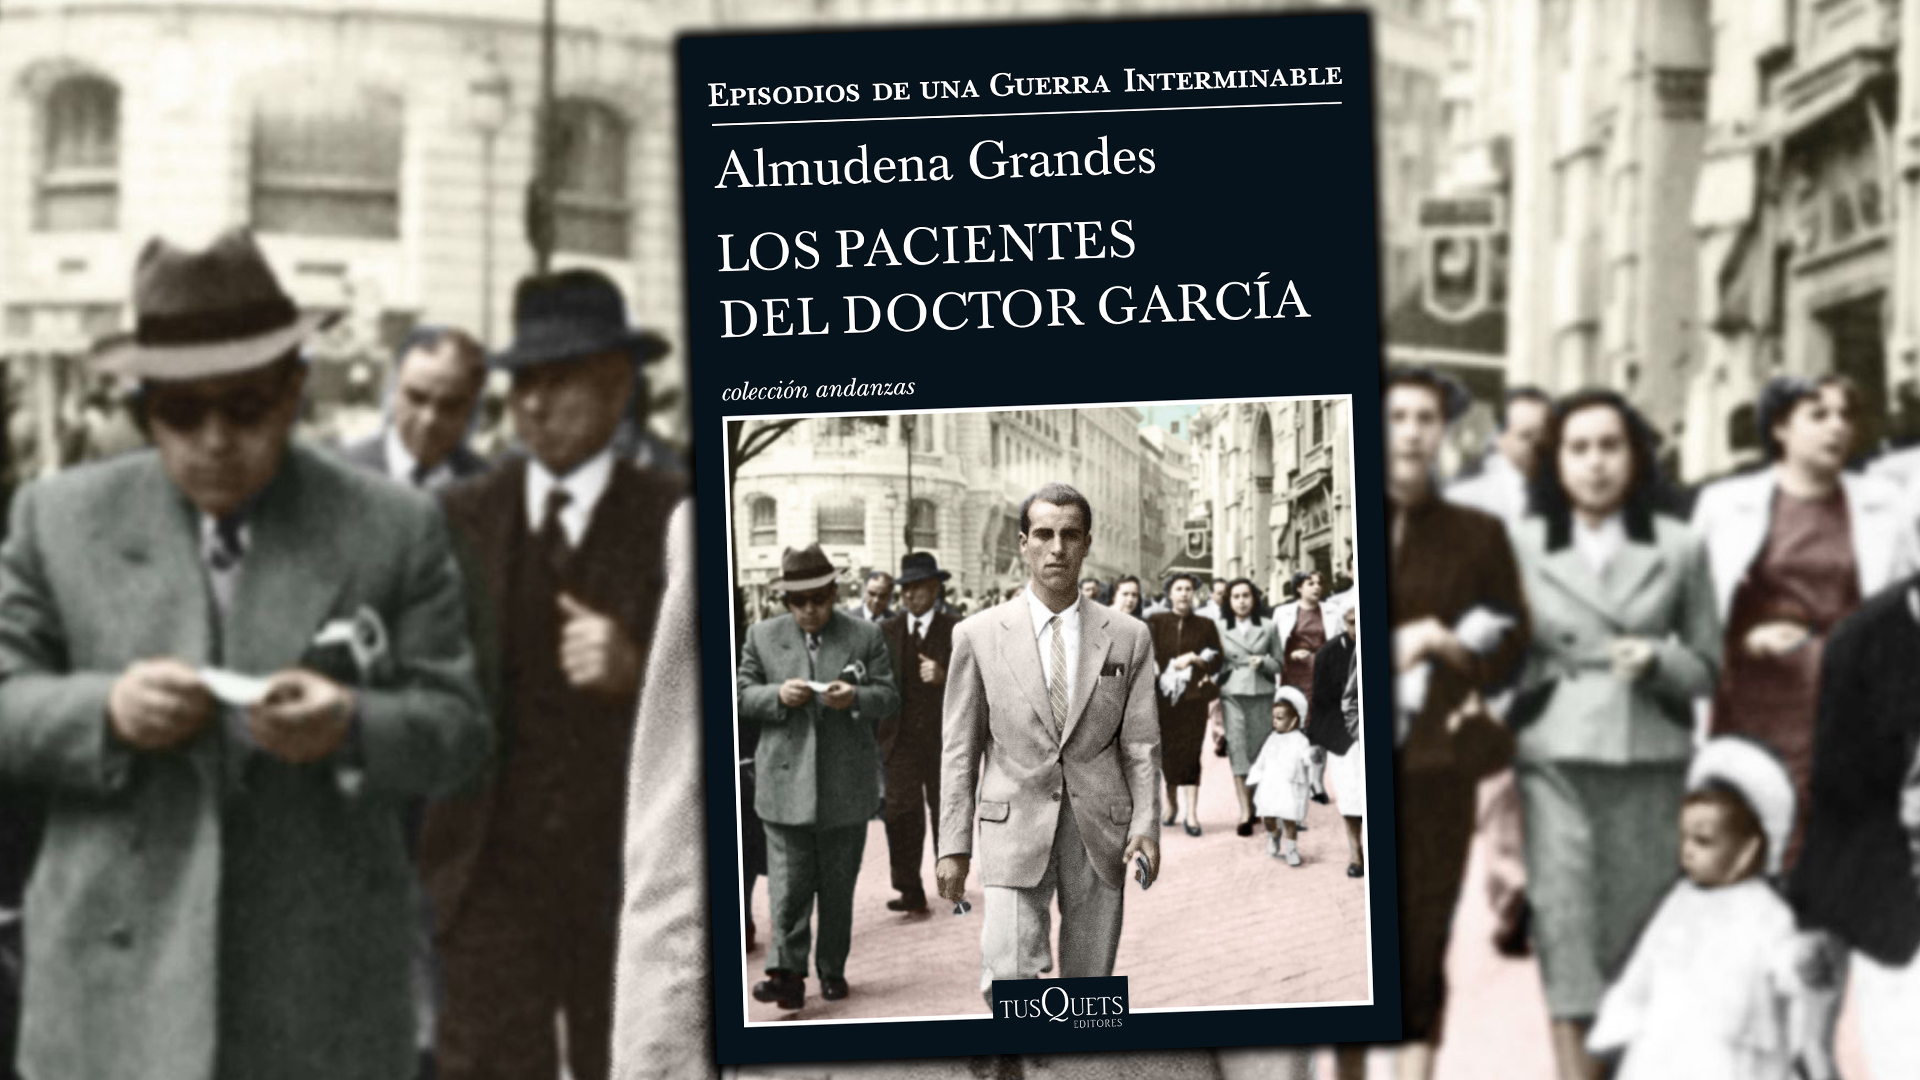 Los pacientes del doctor García’. Almudena Grandes. AplatanaoNews